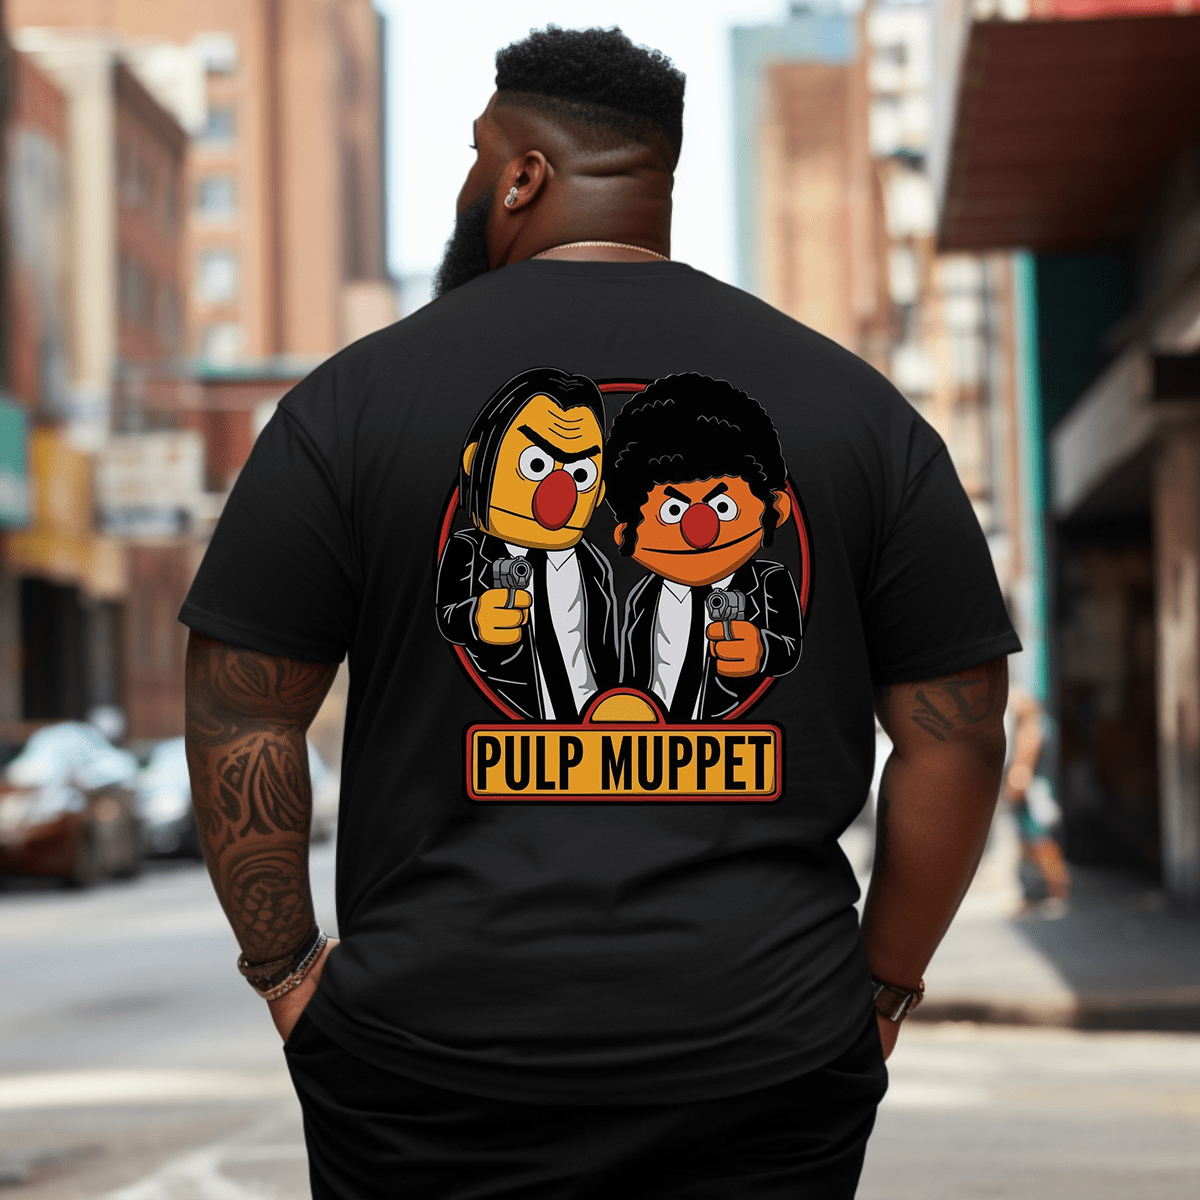 Pulp Muppet Plus Size Men T-Shirt